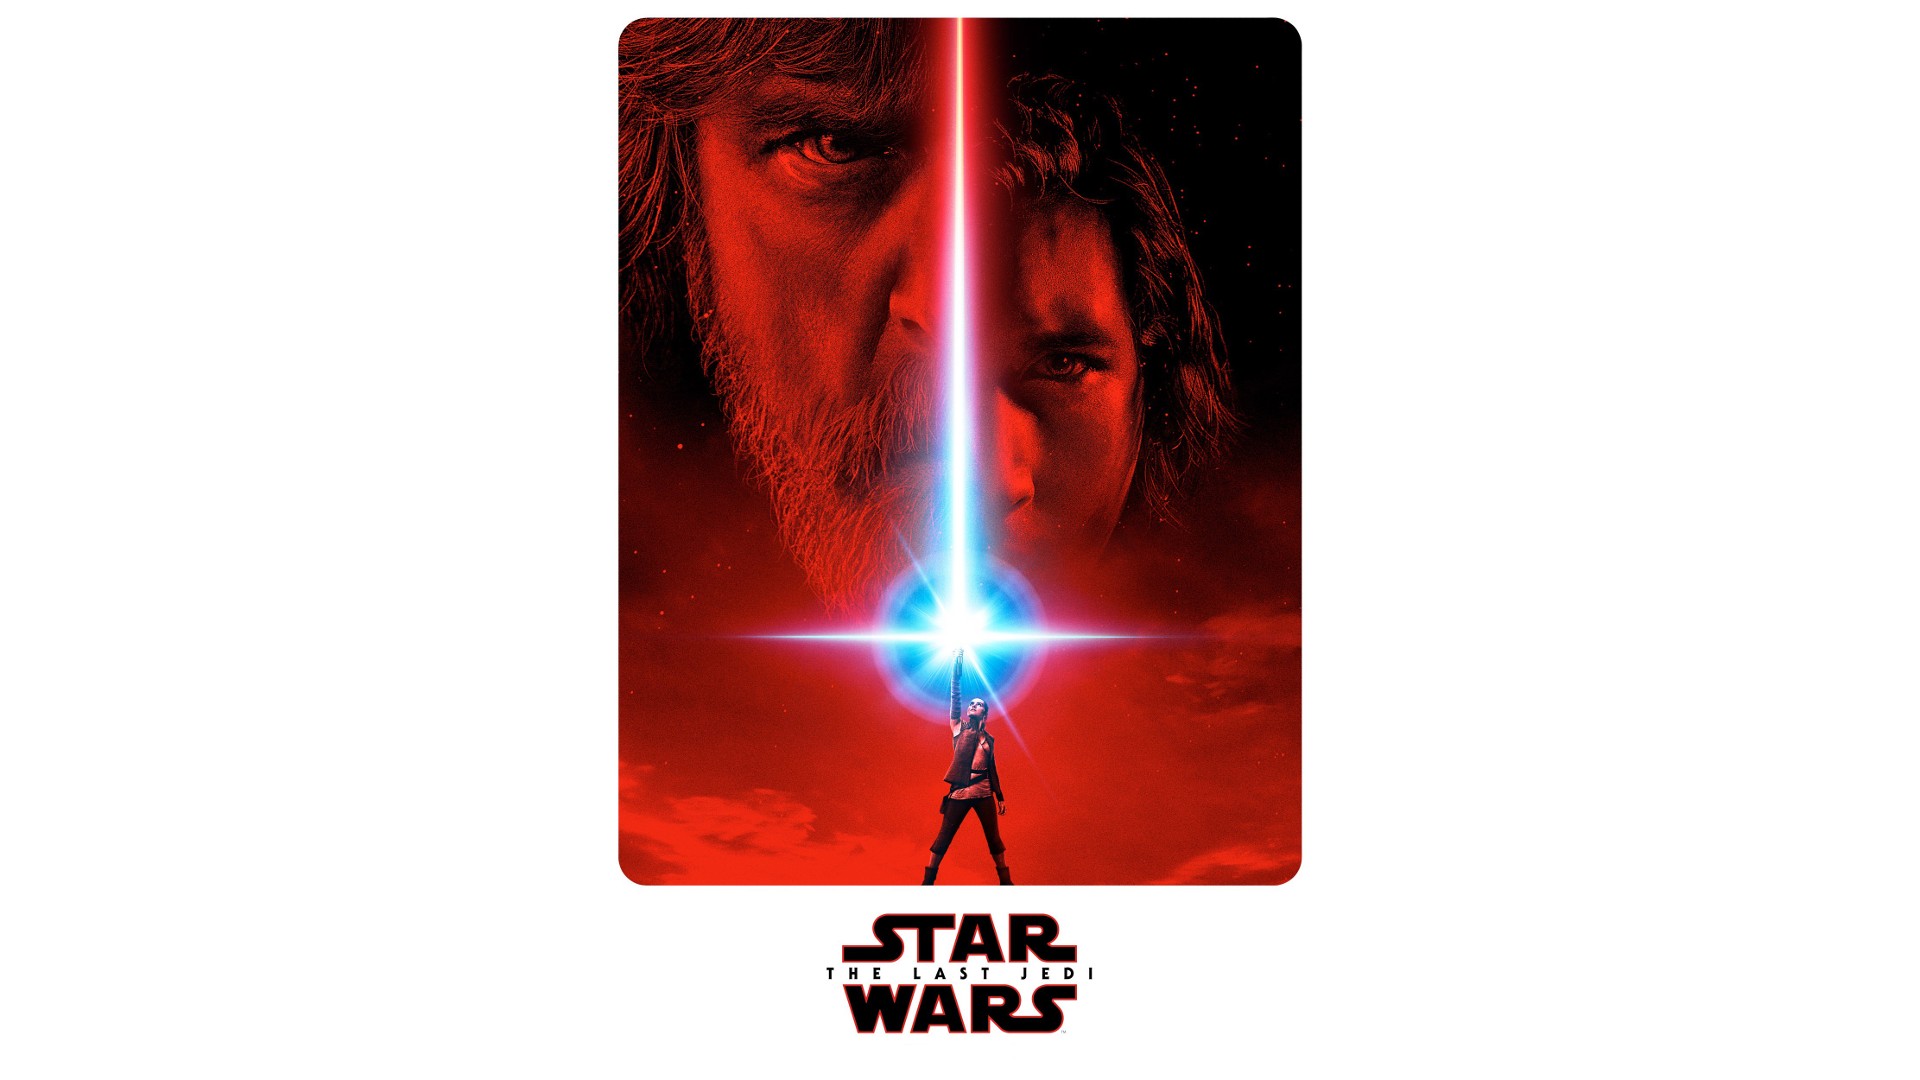 Luke Skywalker, Kylo Ren, Star Wars: The Last Jedi, Star Wars, Rey (from Star Wars), Lightsaber Wallpaper